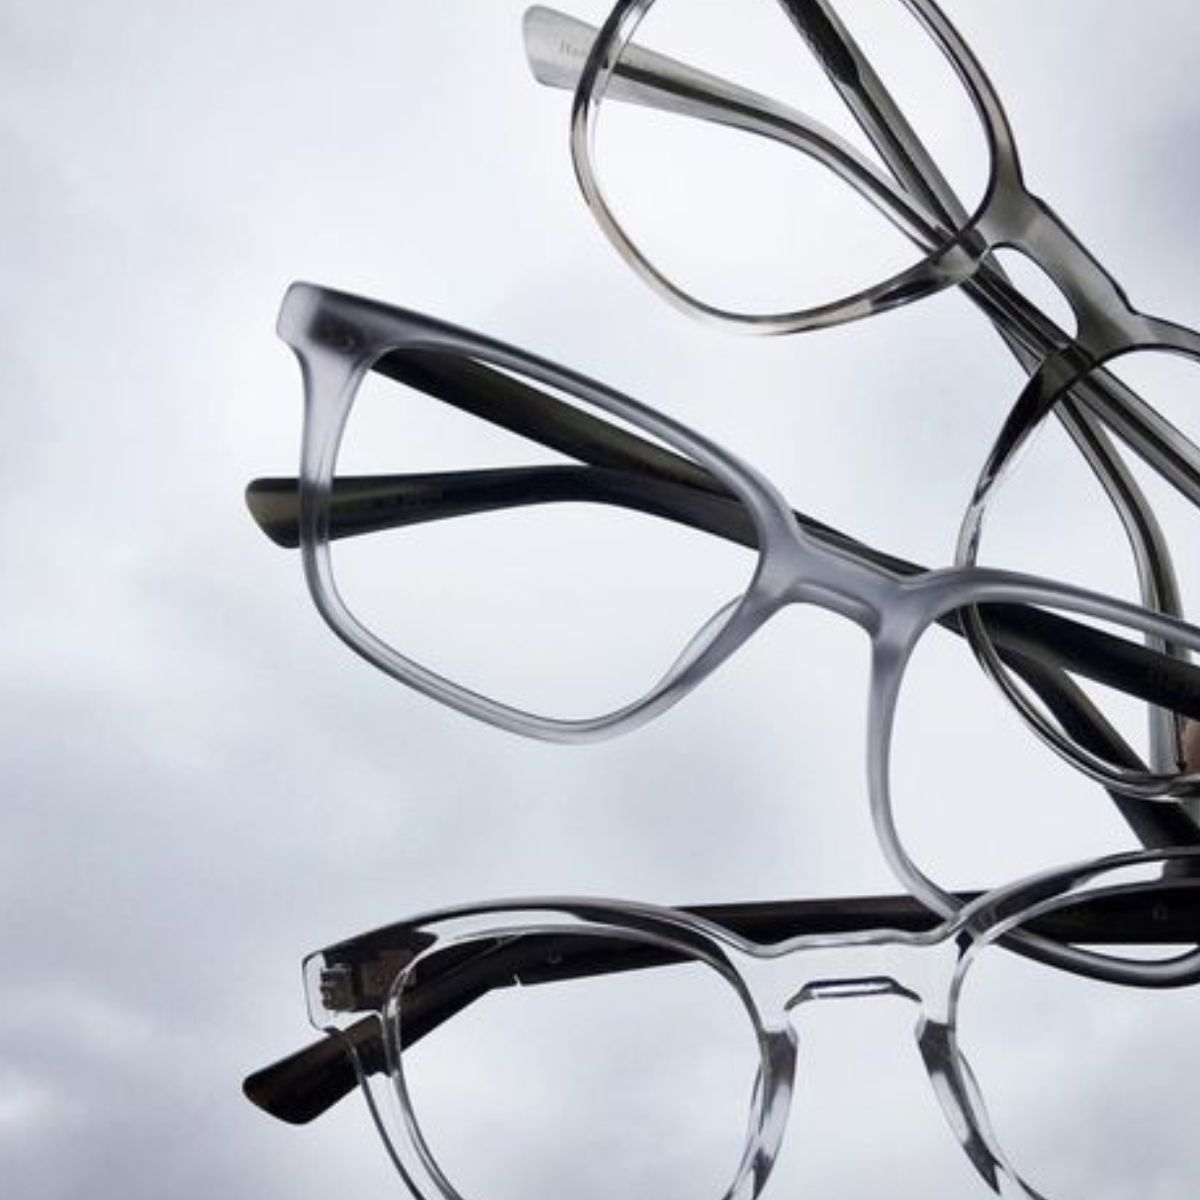 "All Branded Optical Frames | Optical Glasses For Both Men's & Women's At Optorium"